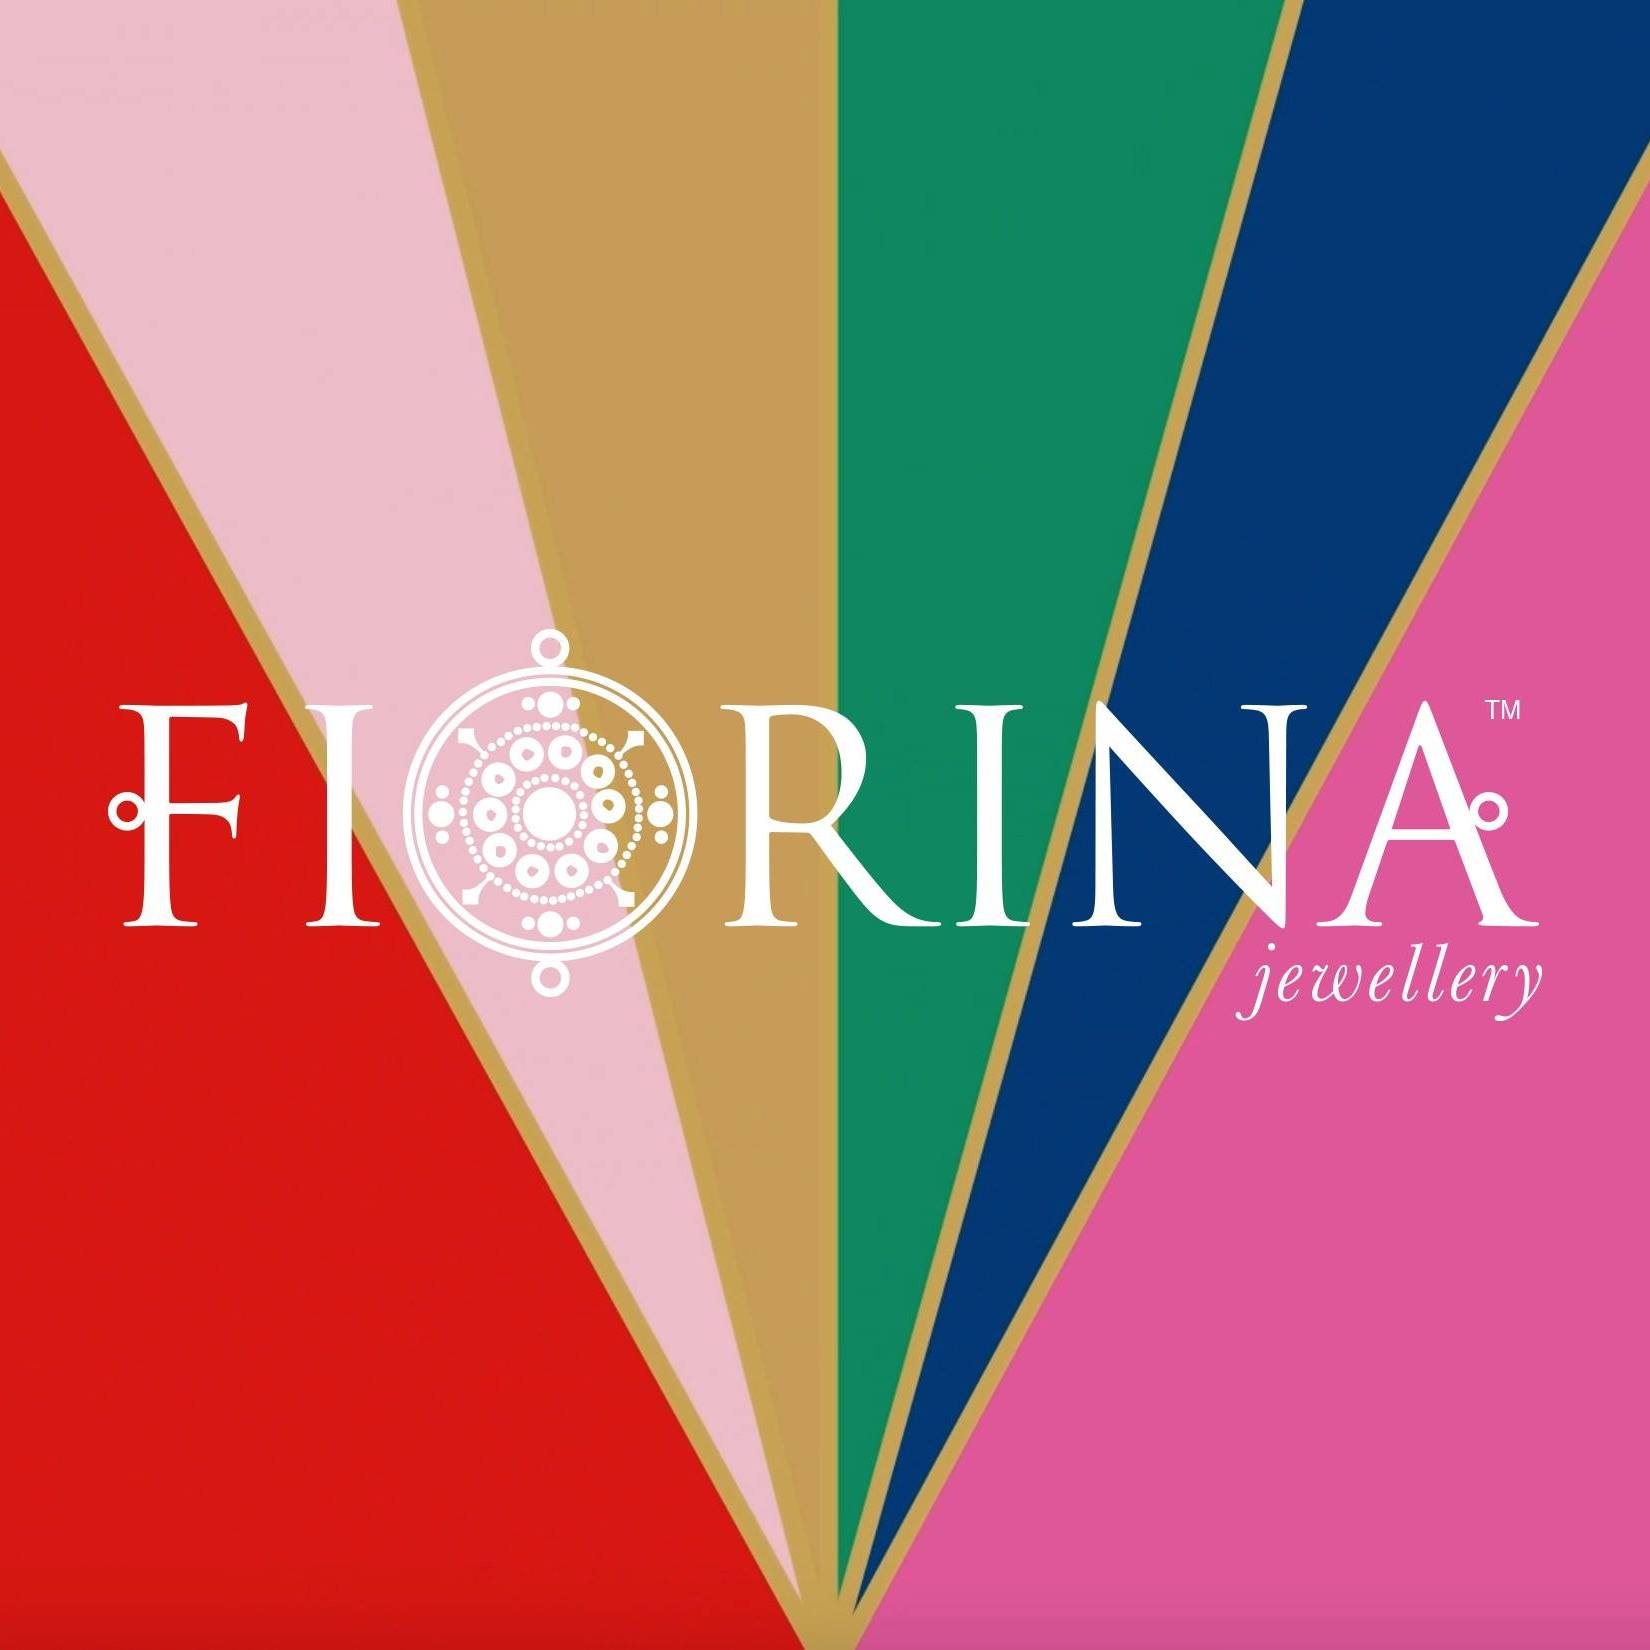 Company logo of Fiorina Jewellery